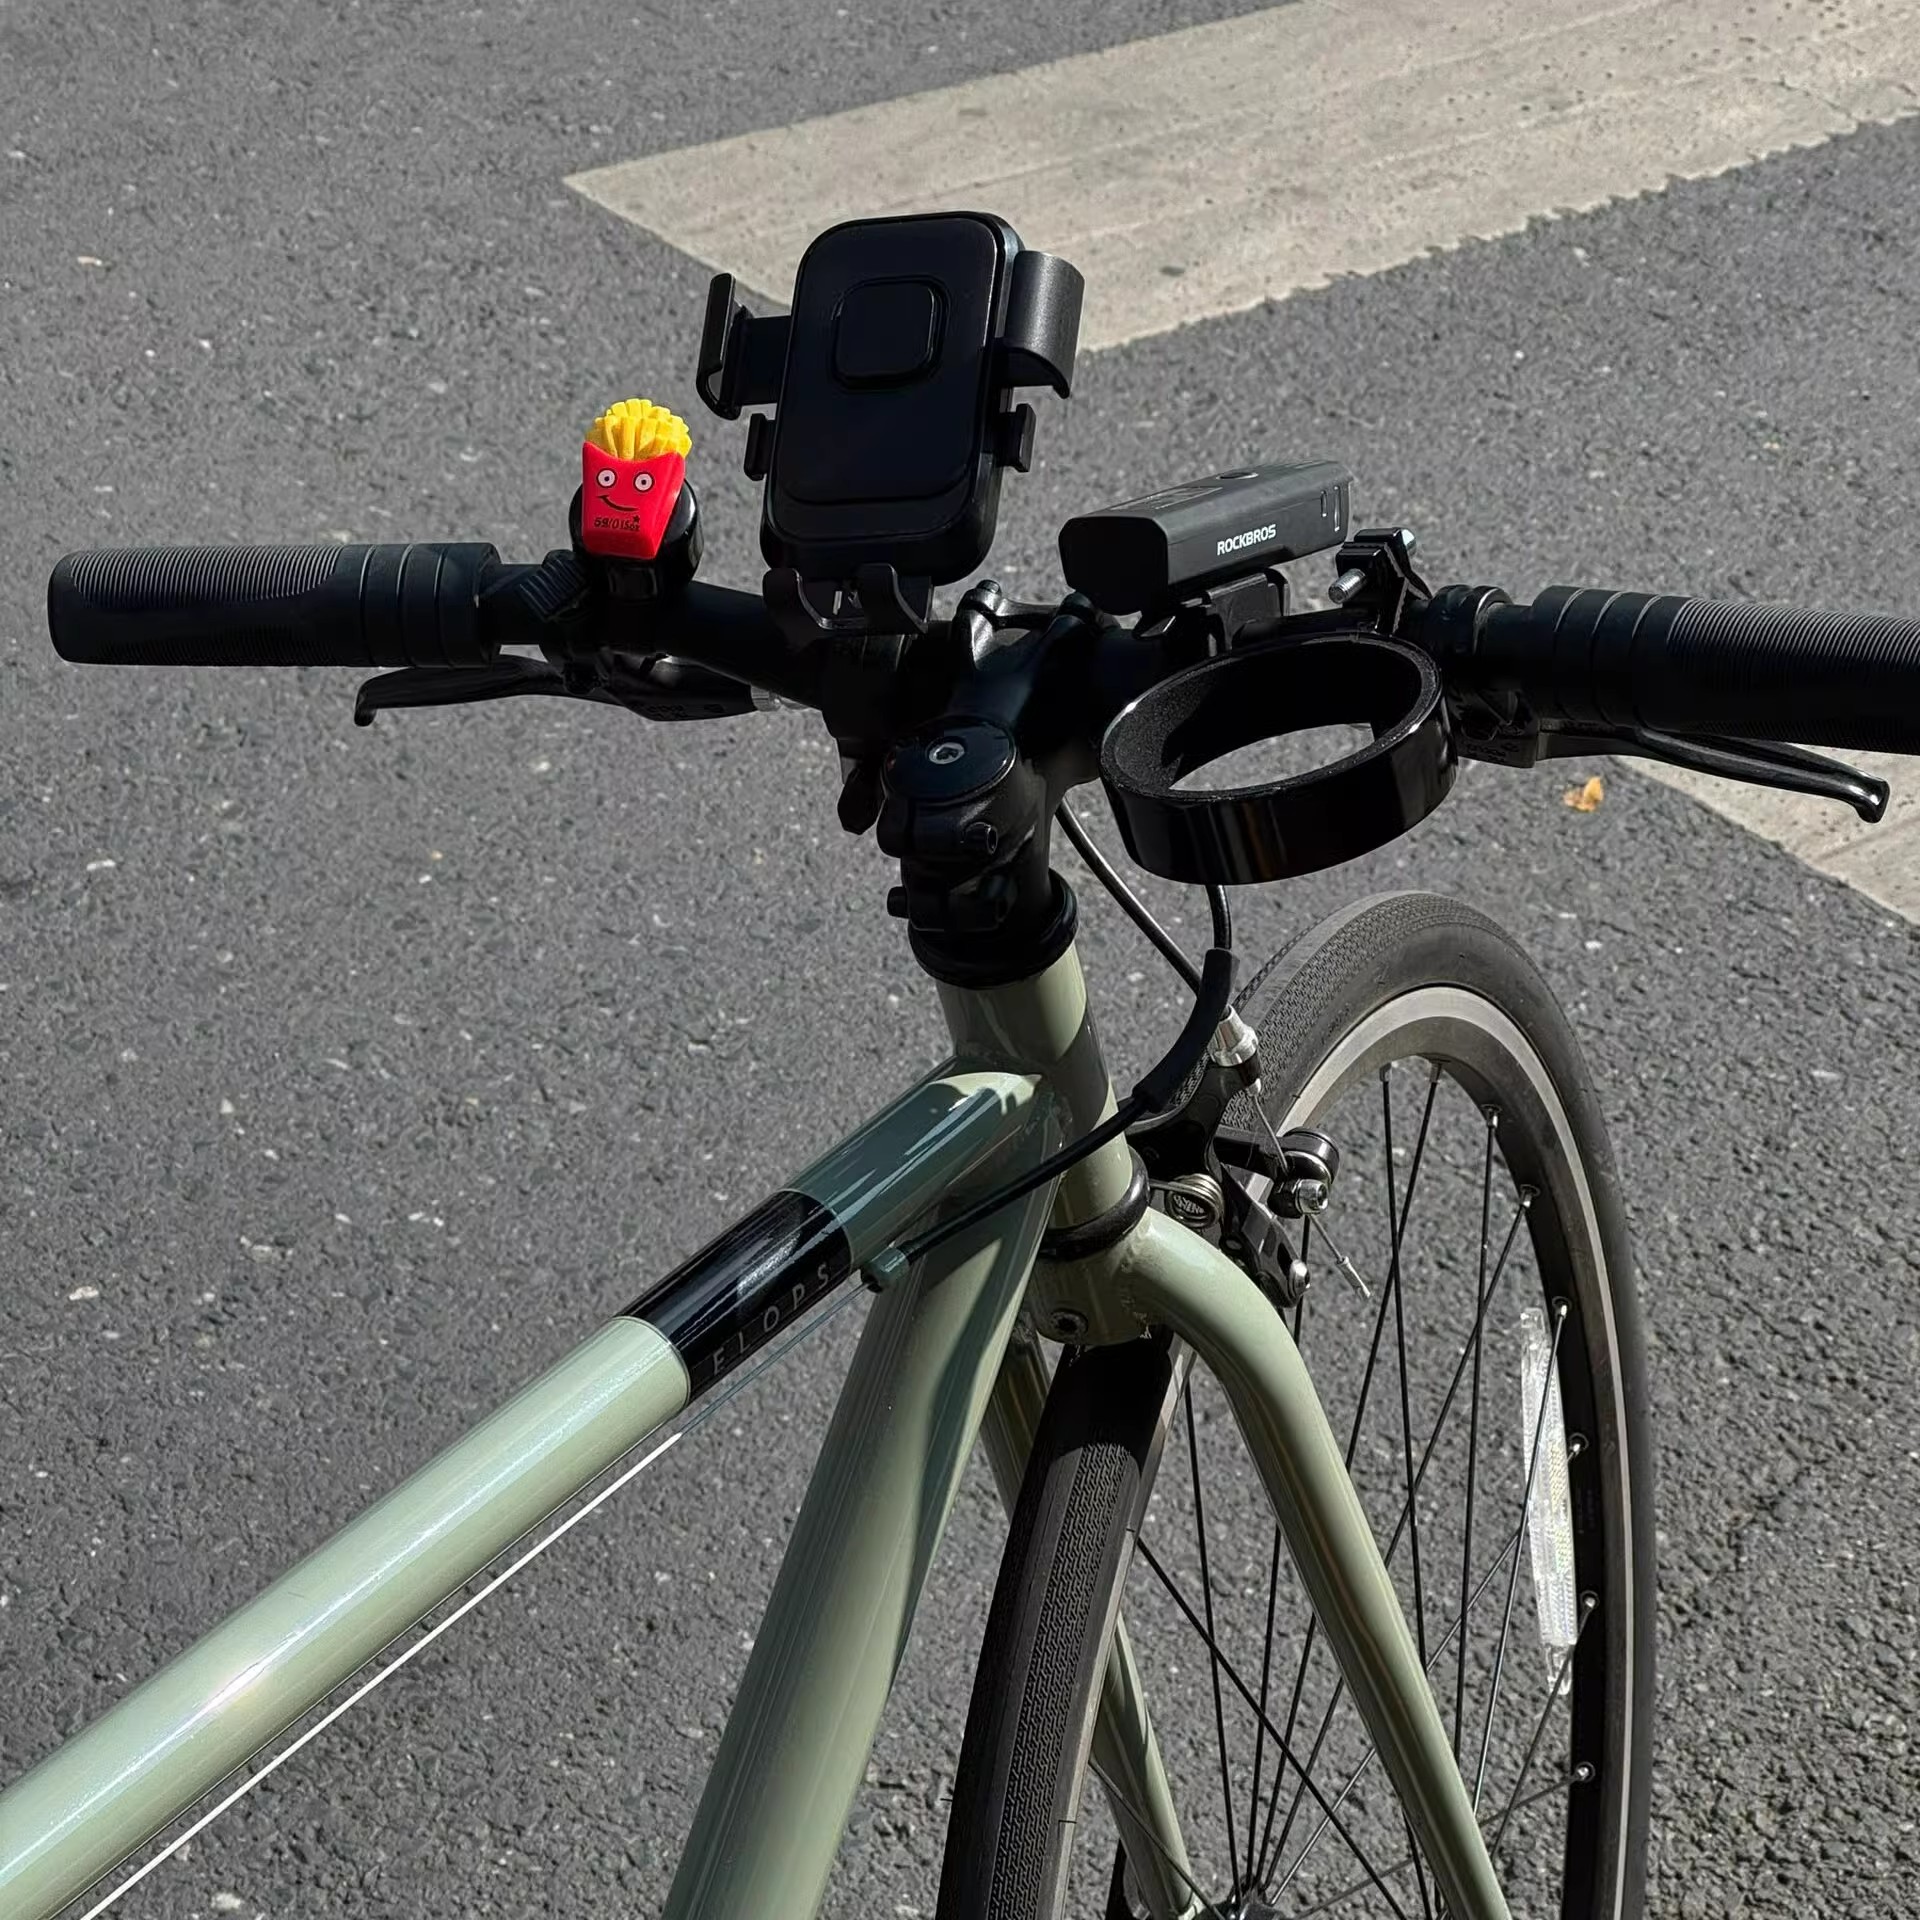 自行车支架手机专用山地车单车电动车摩托车骑行导航固定支架子